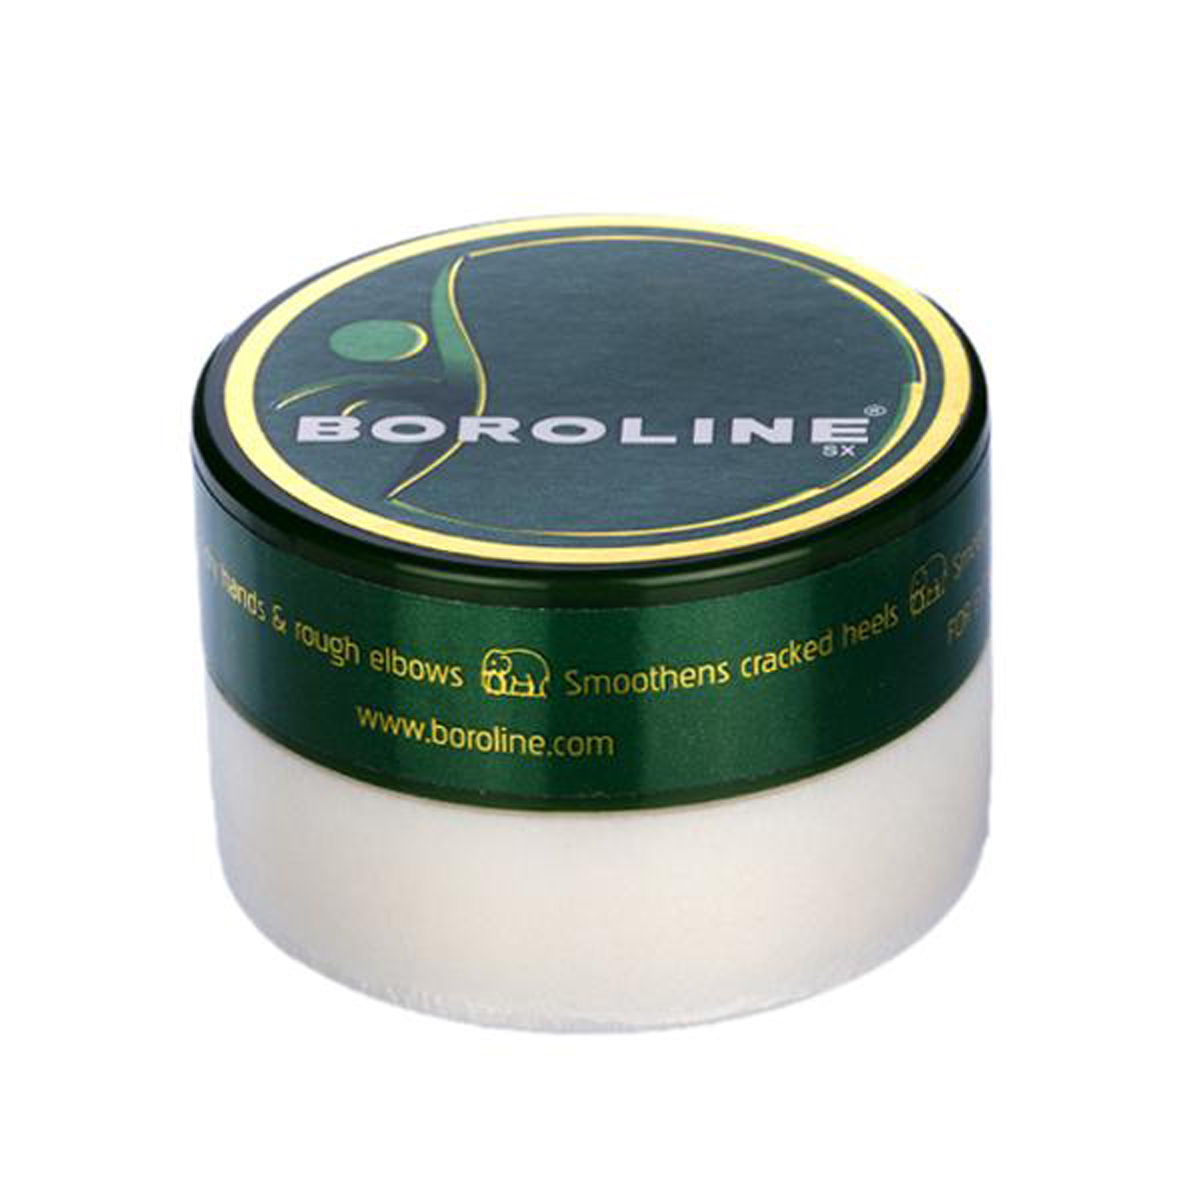 Boroline, 10 gm, Pack of 1 